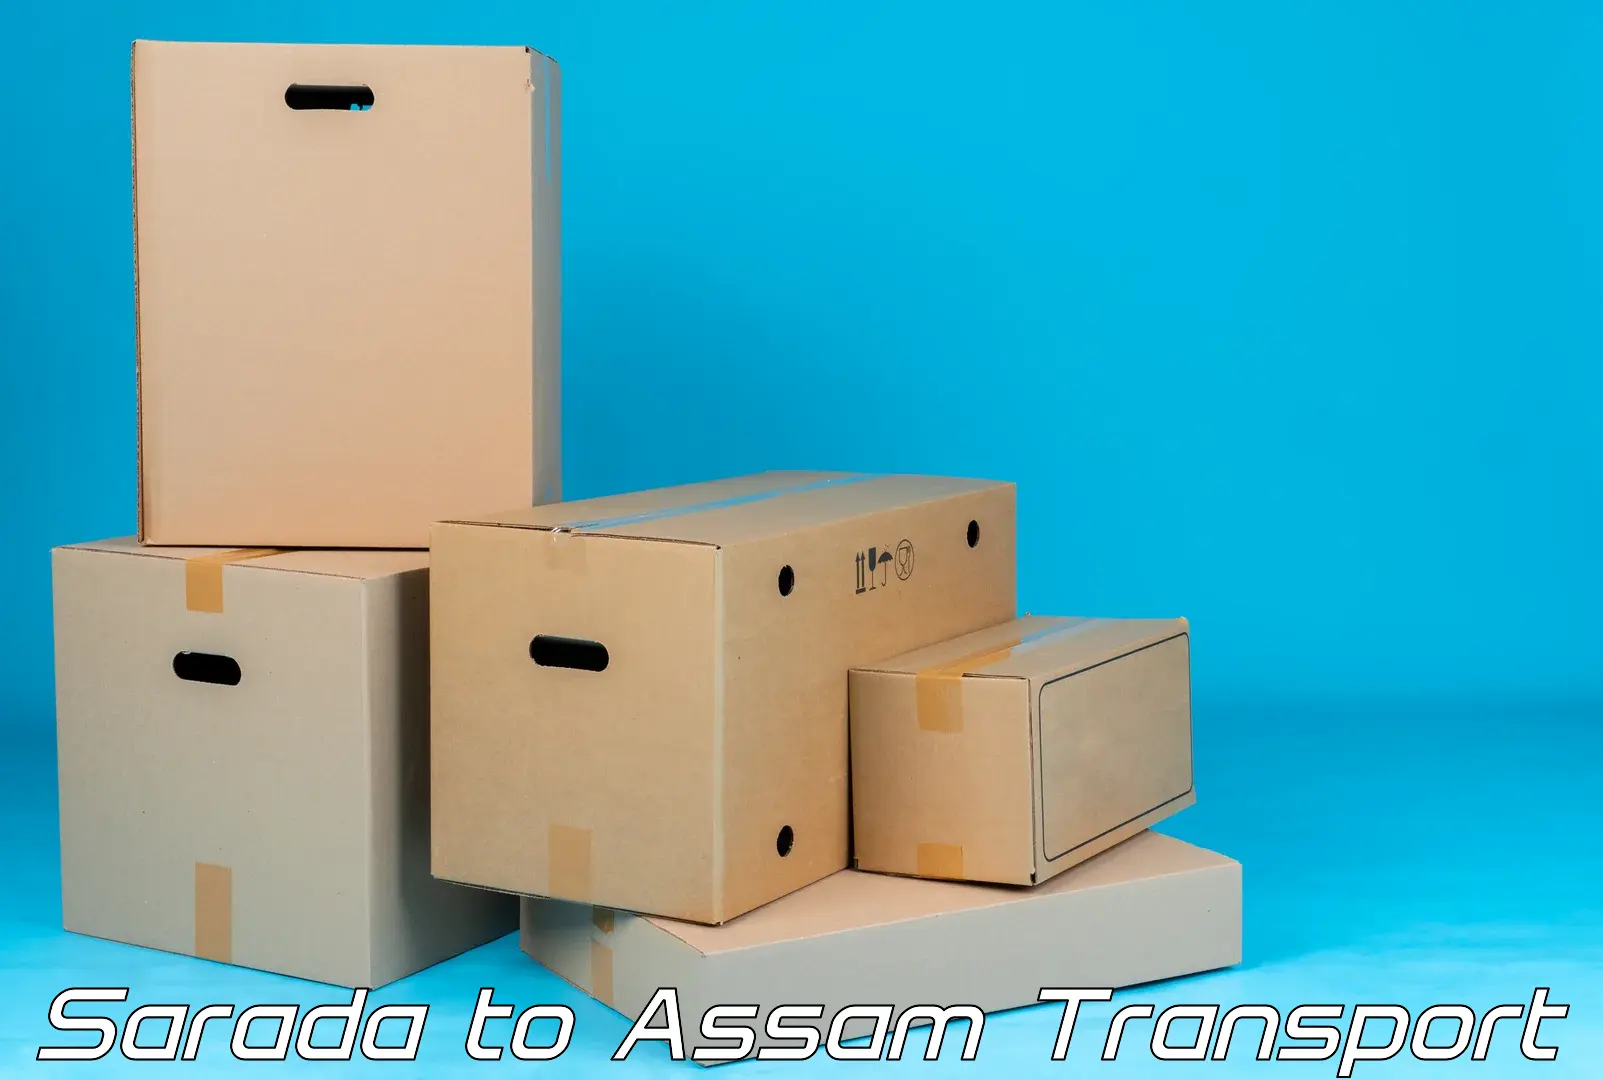 Container transport service Sarada to Assam